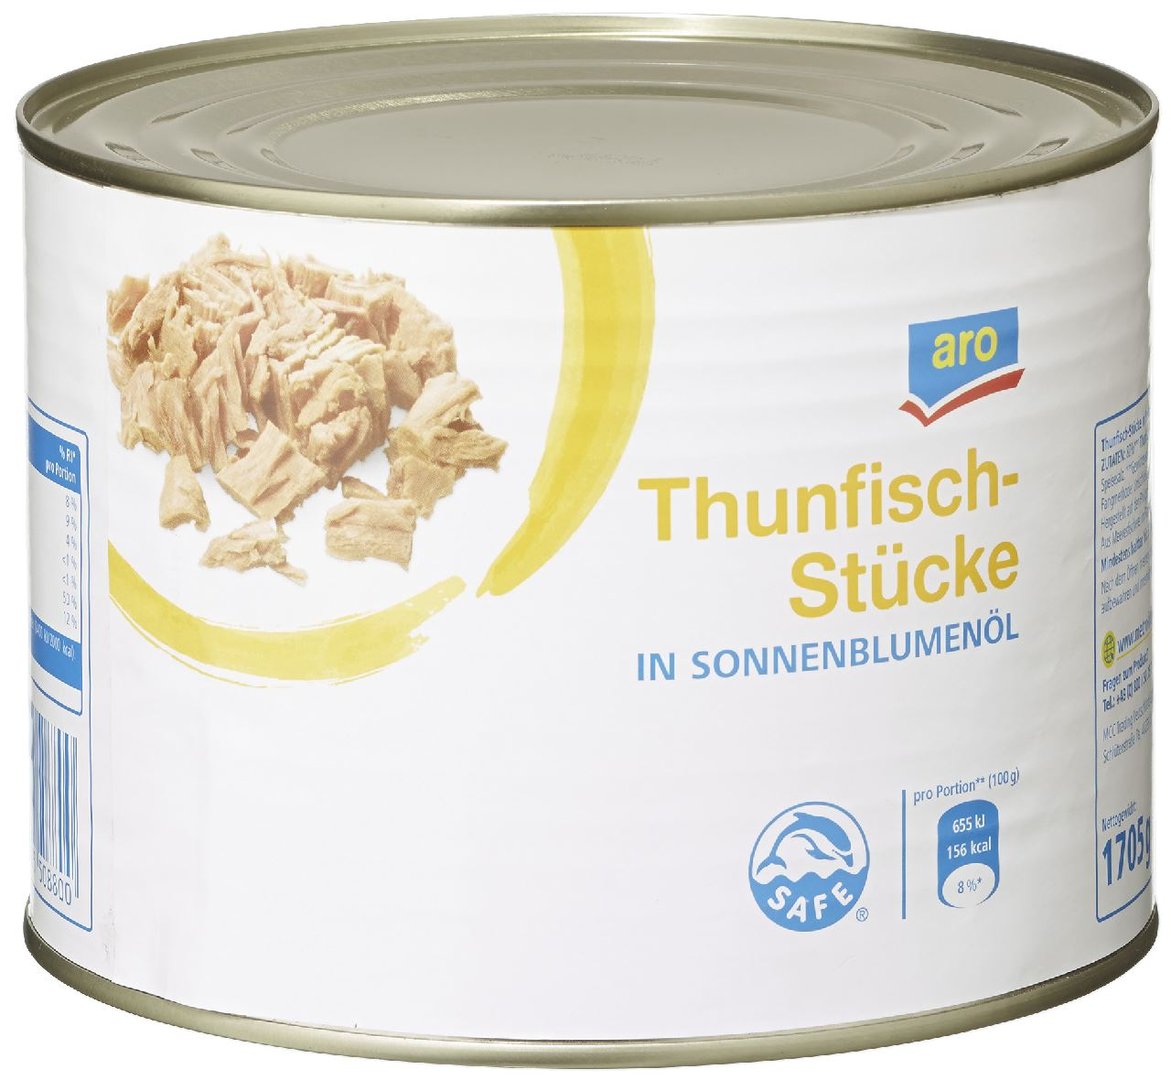 aro - Thunfisch-Stücke in Sonnenblumenöl - 1,705 kg Dose